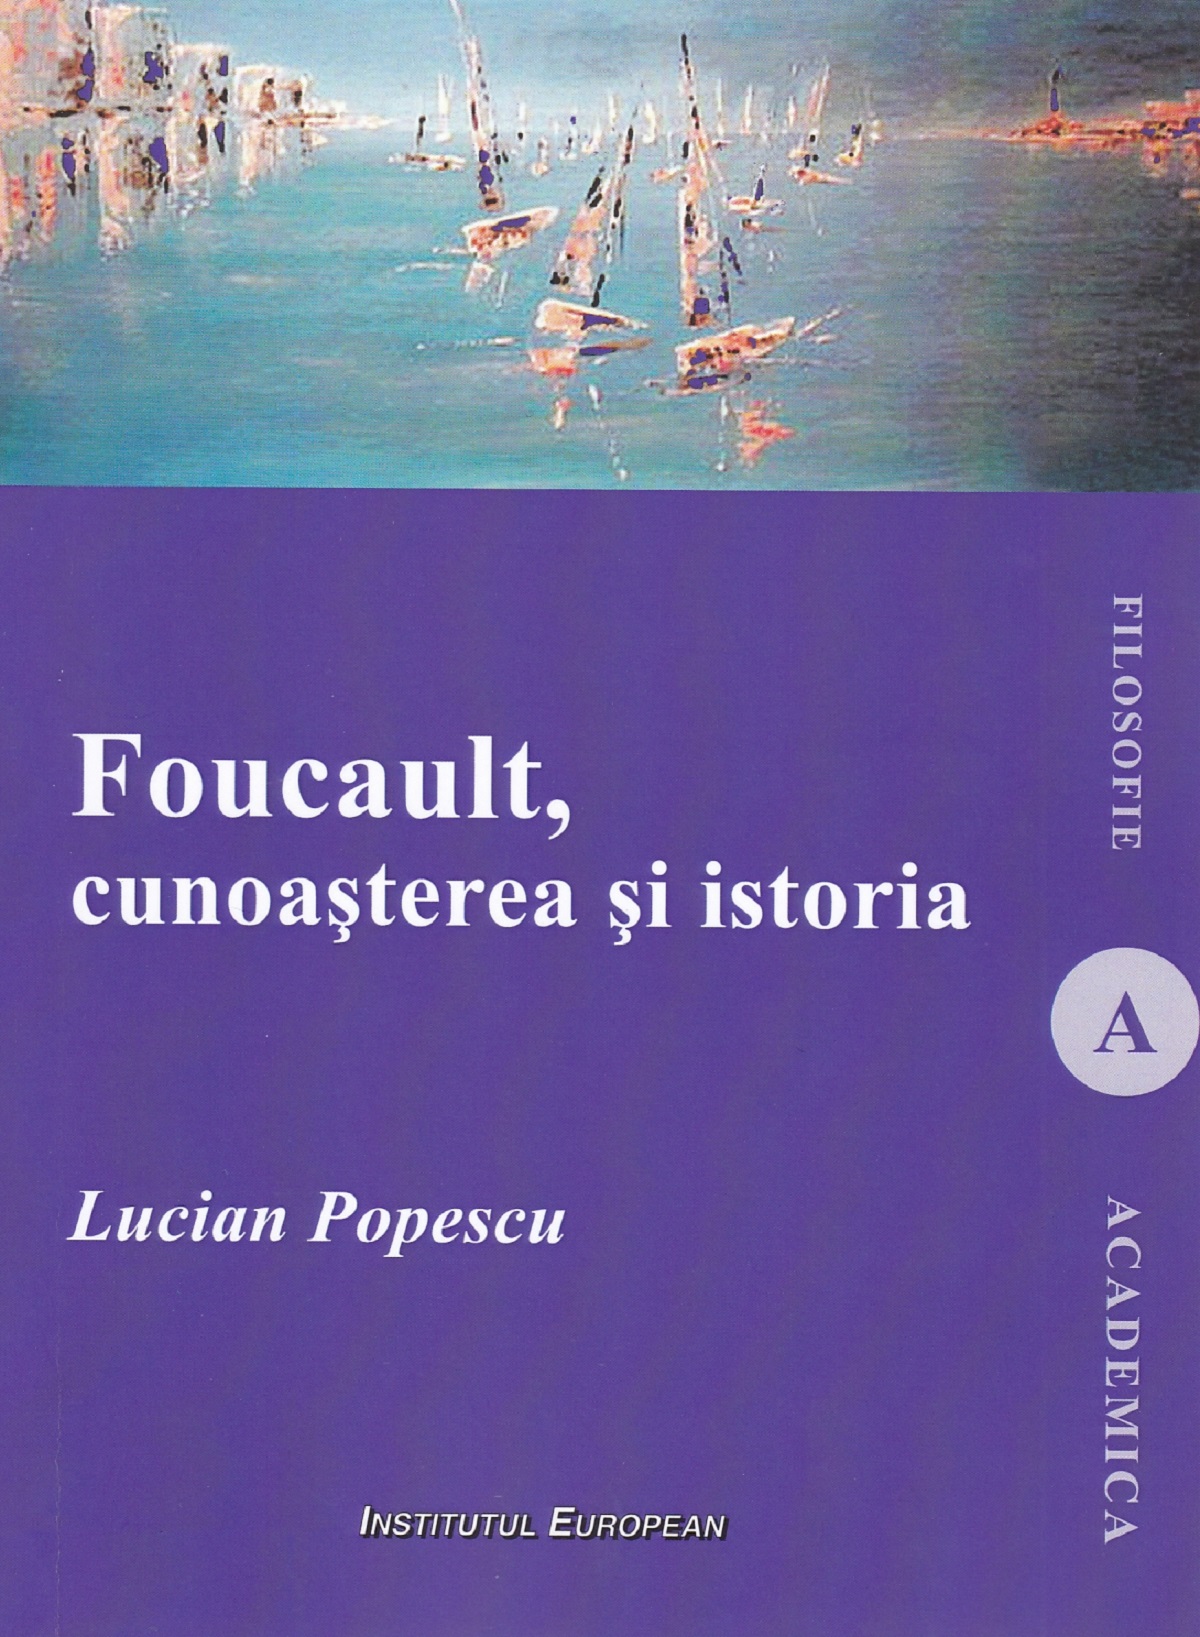 Foucault, cunoasterea si istoria - Lucian Popescu